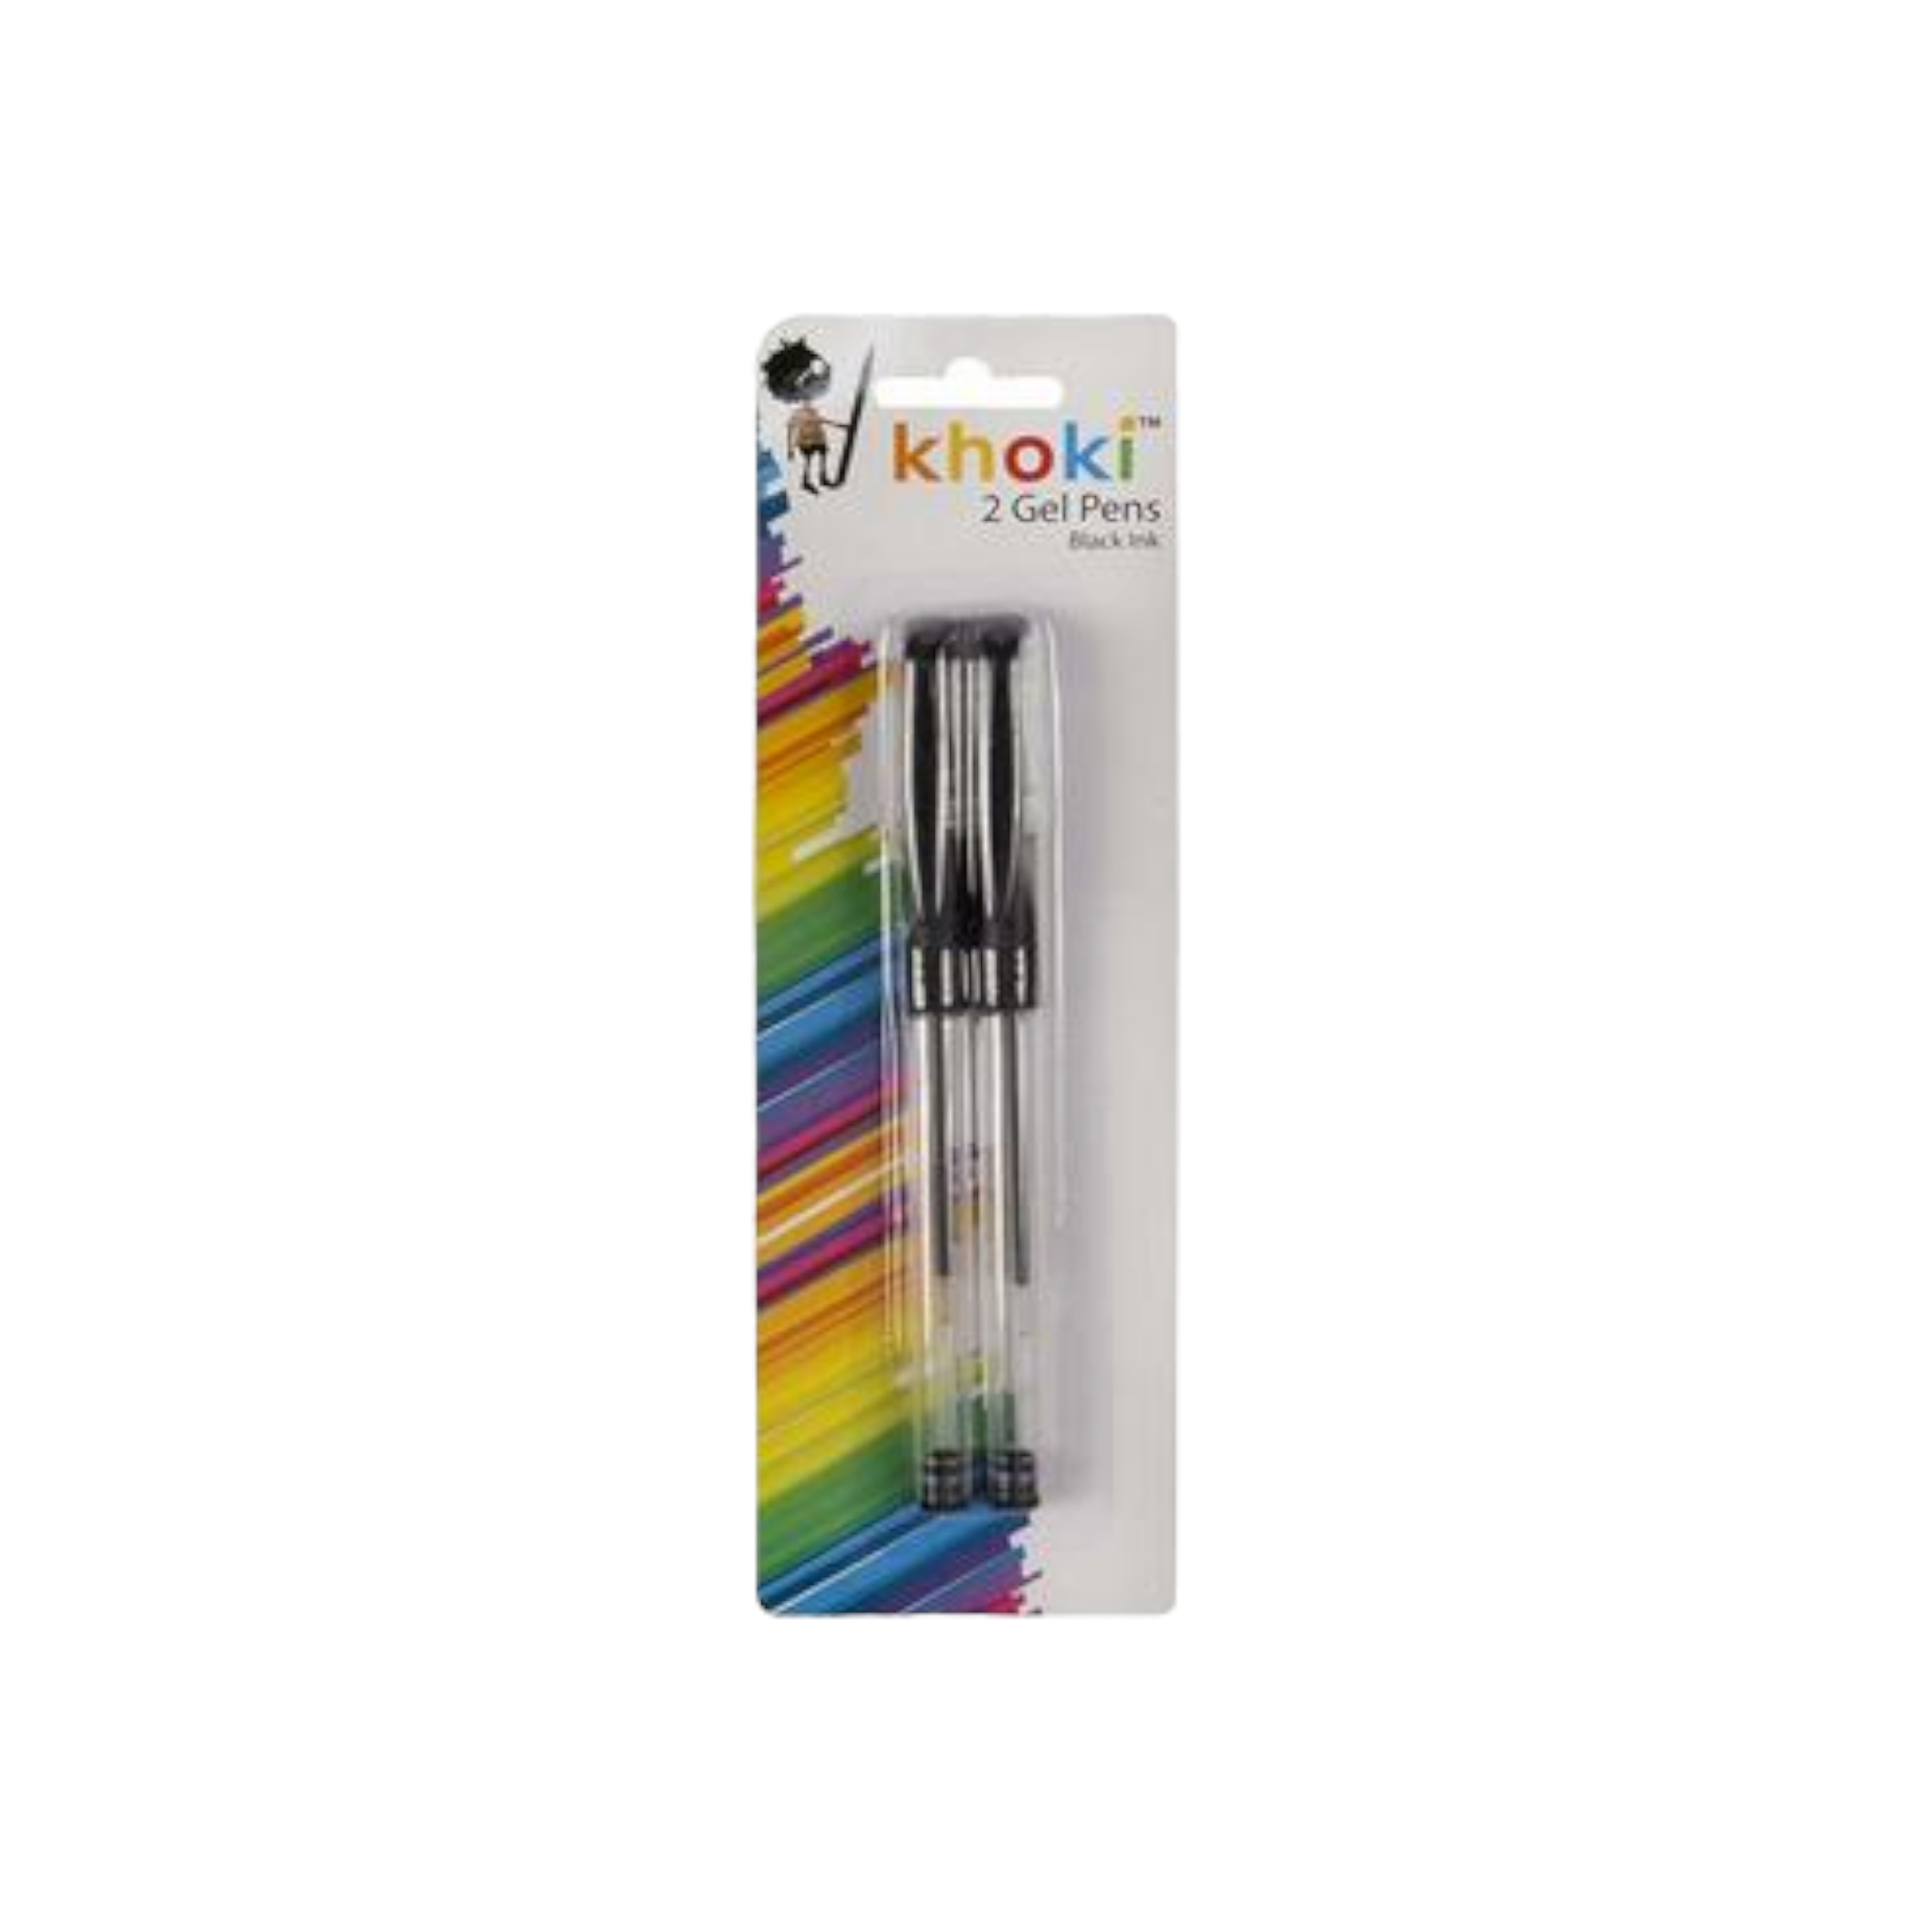 Khoki Gell Ball Pen Black 2pack